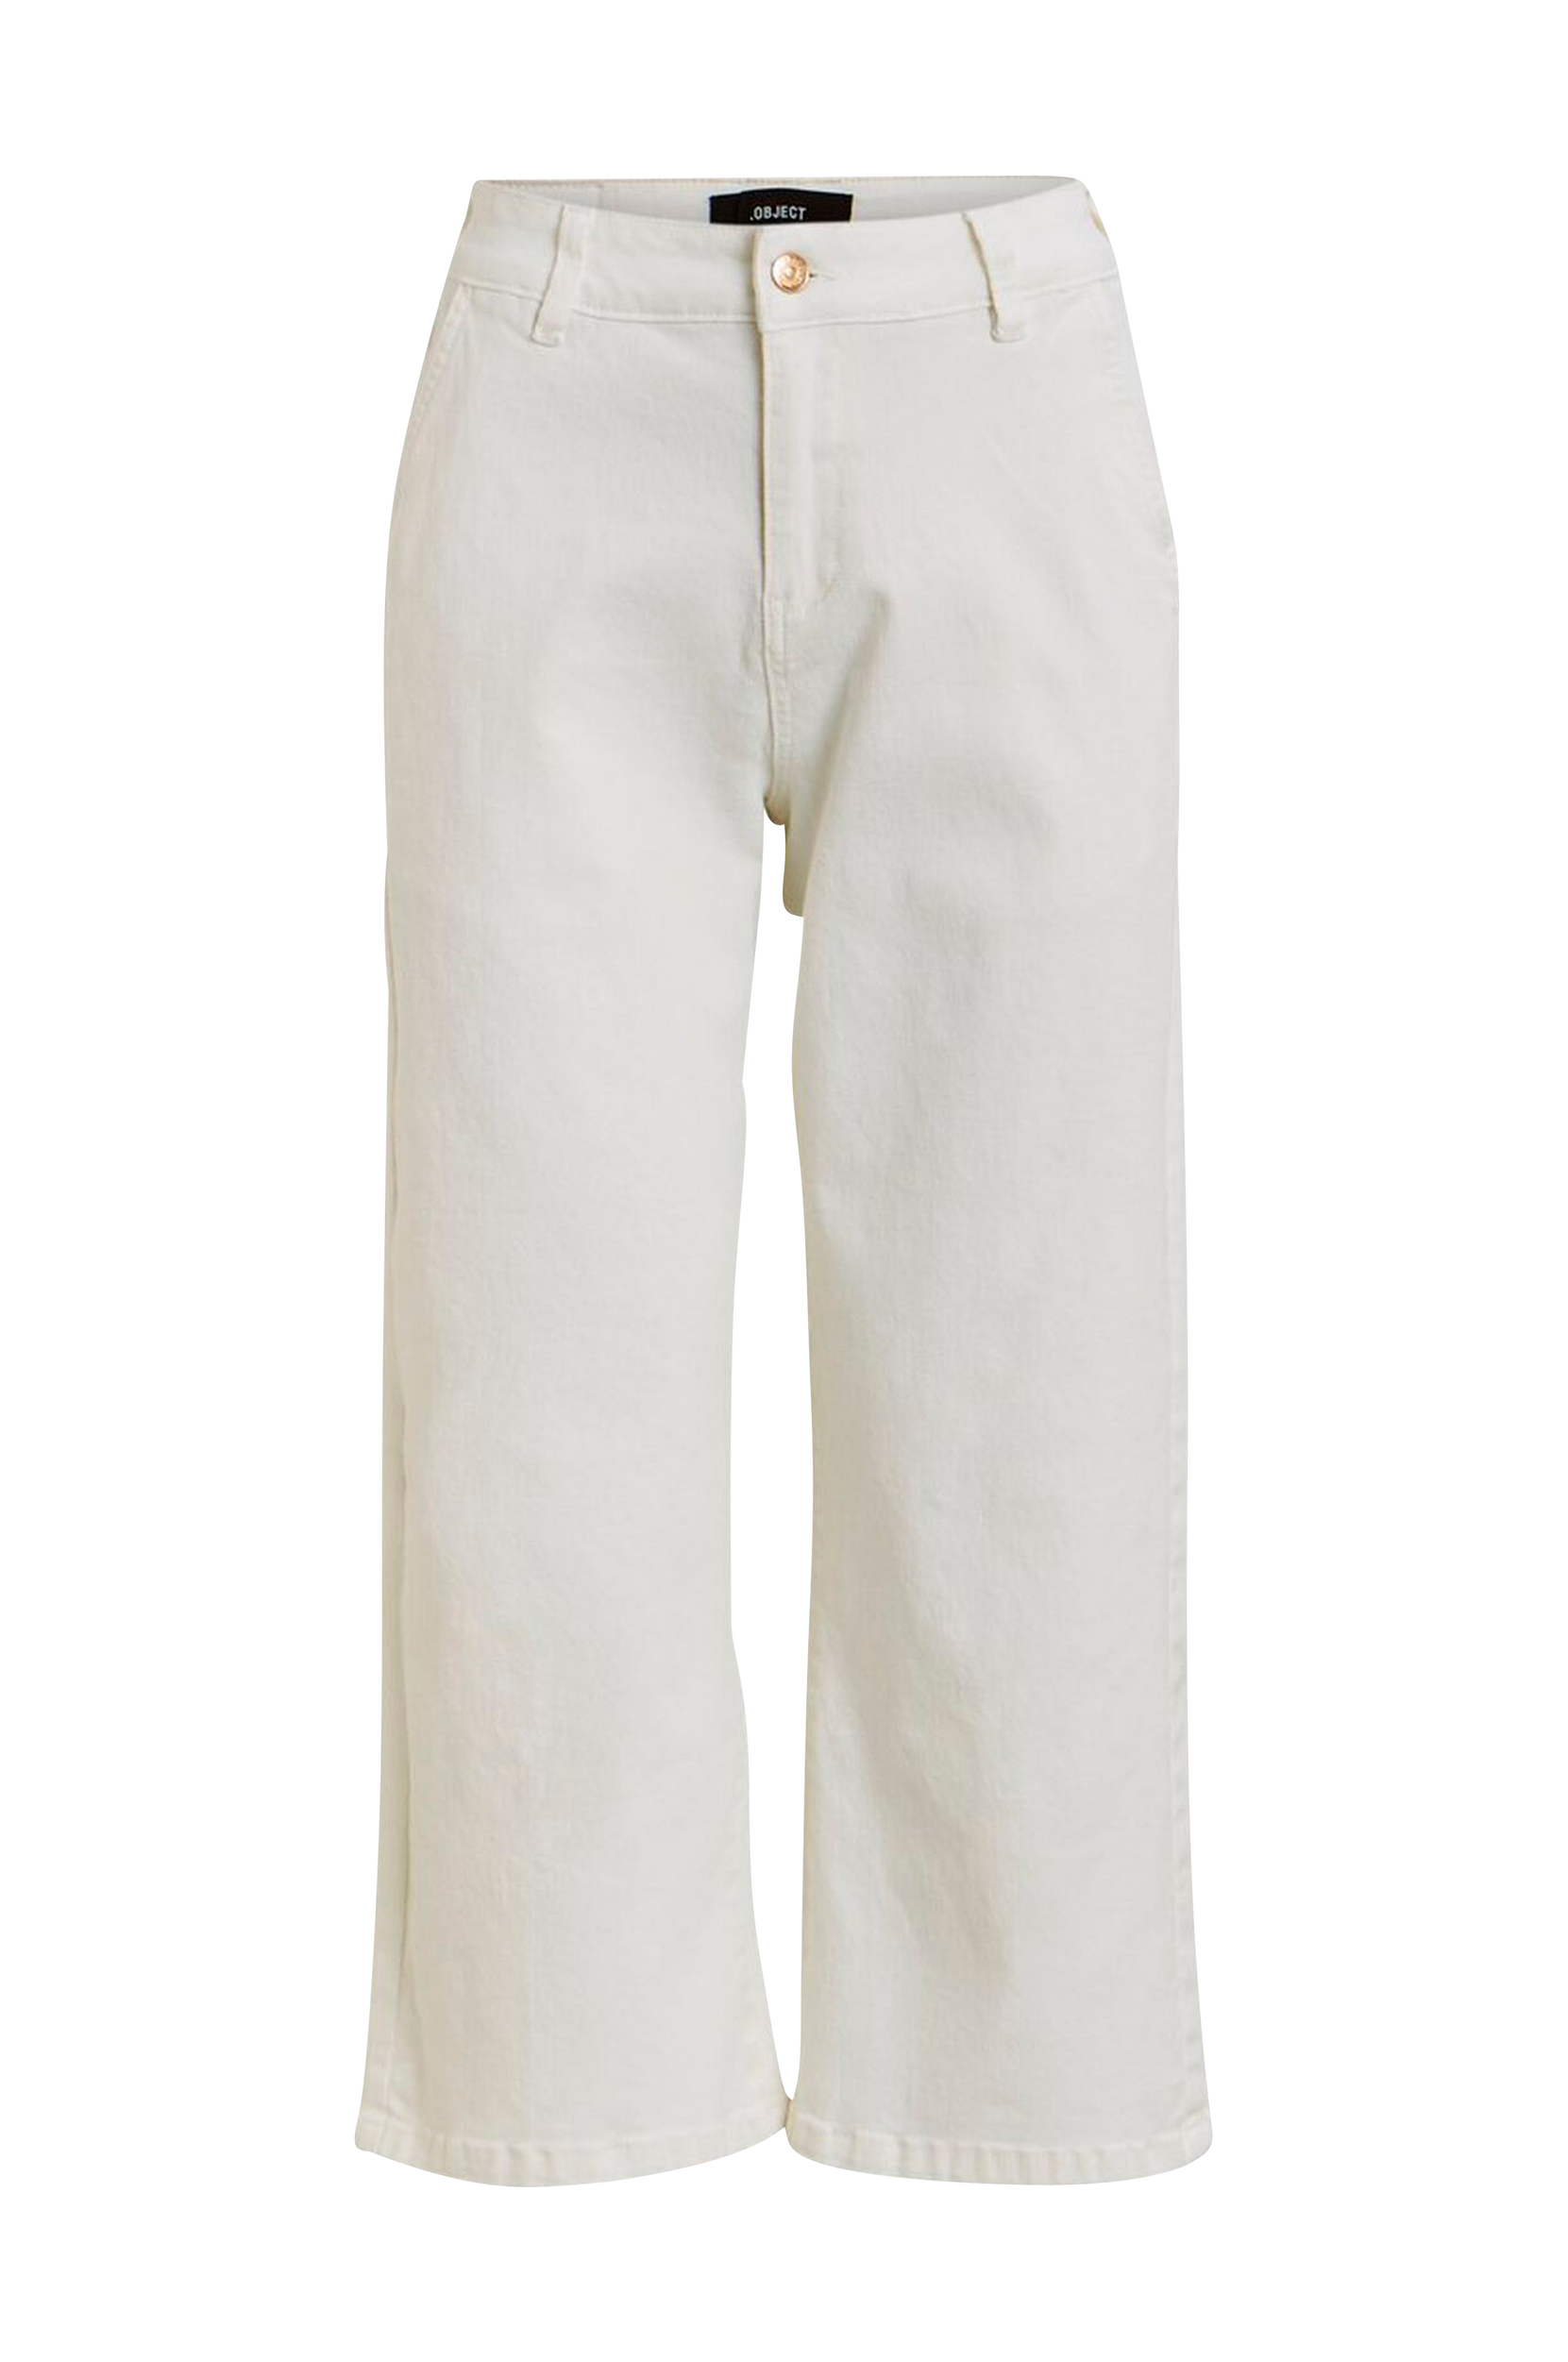 Farkut objMarina MW Twill Jeans 108, Object